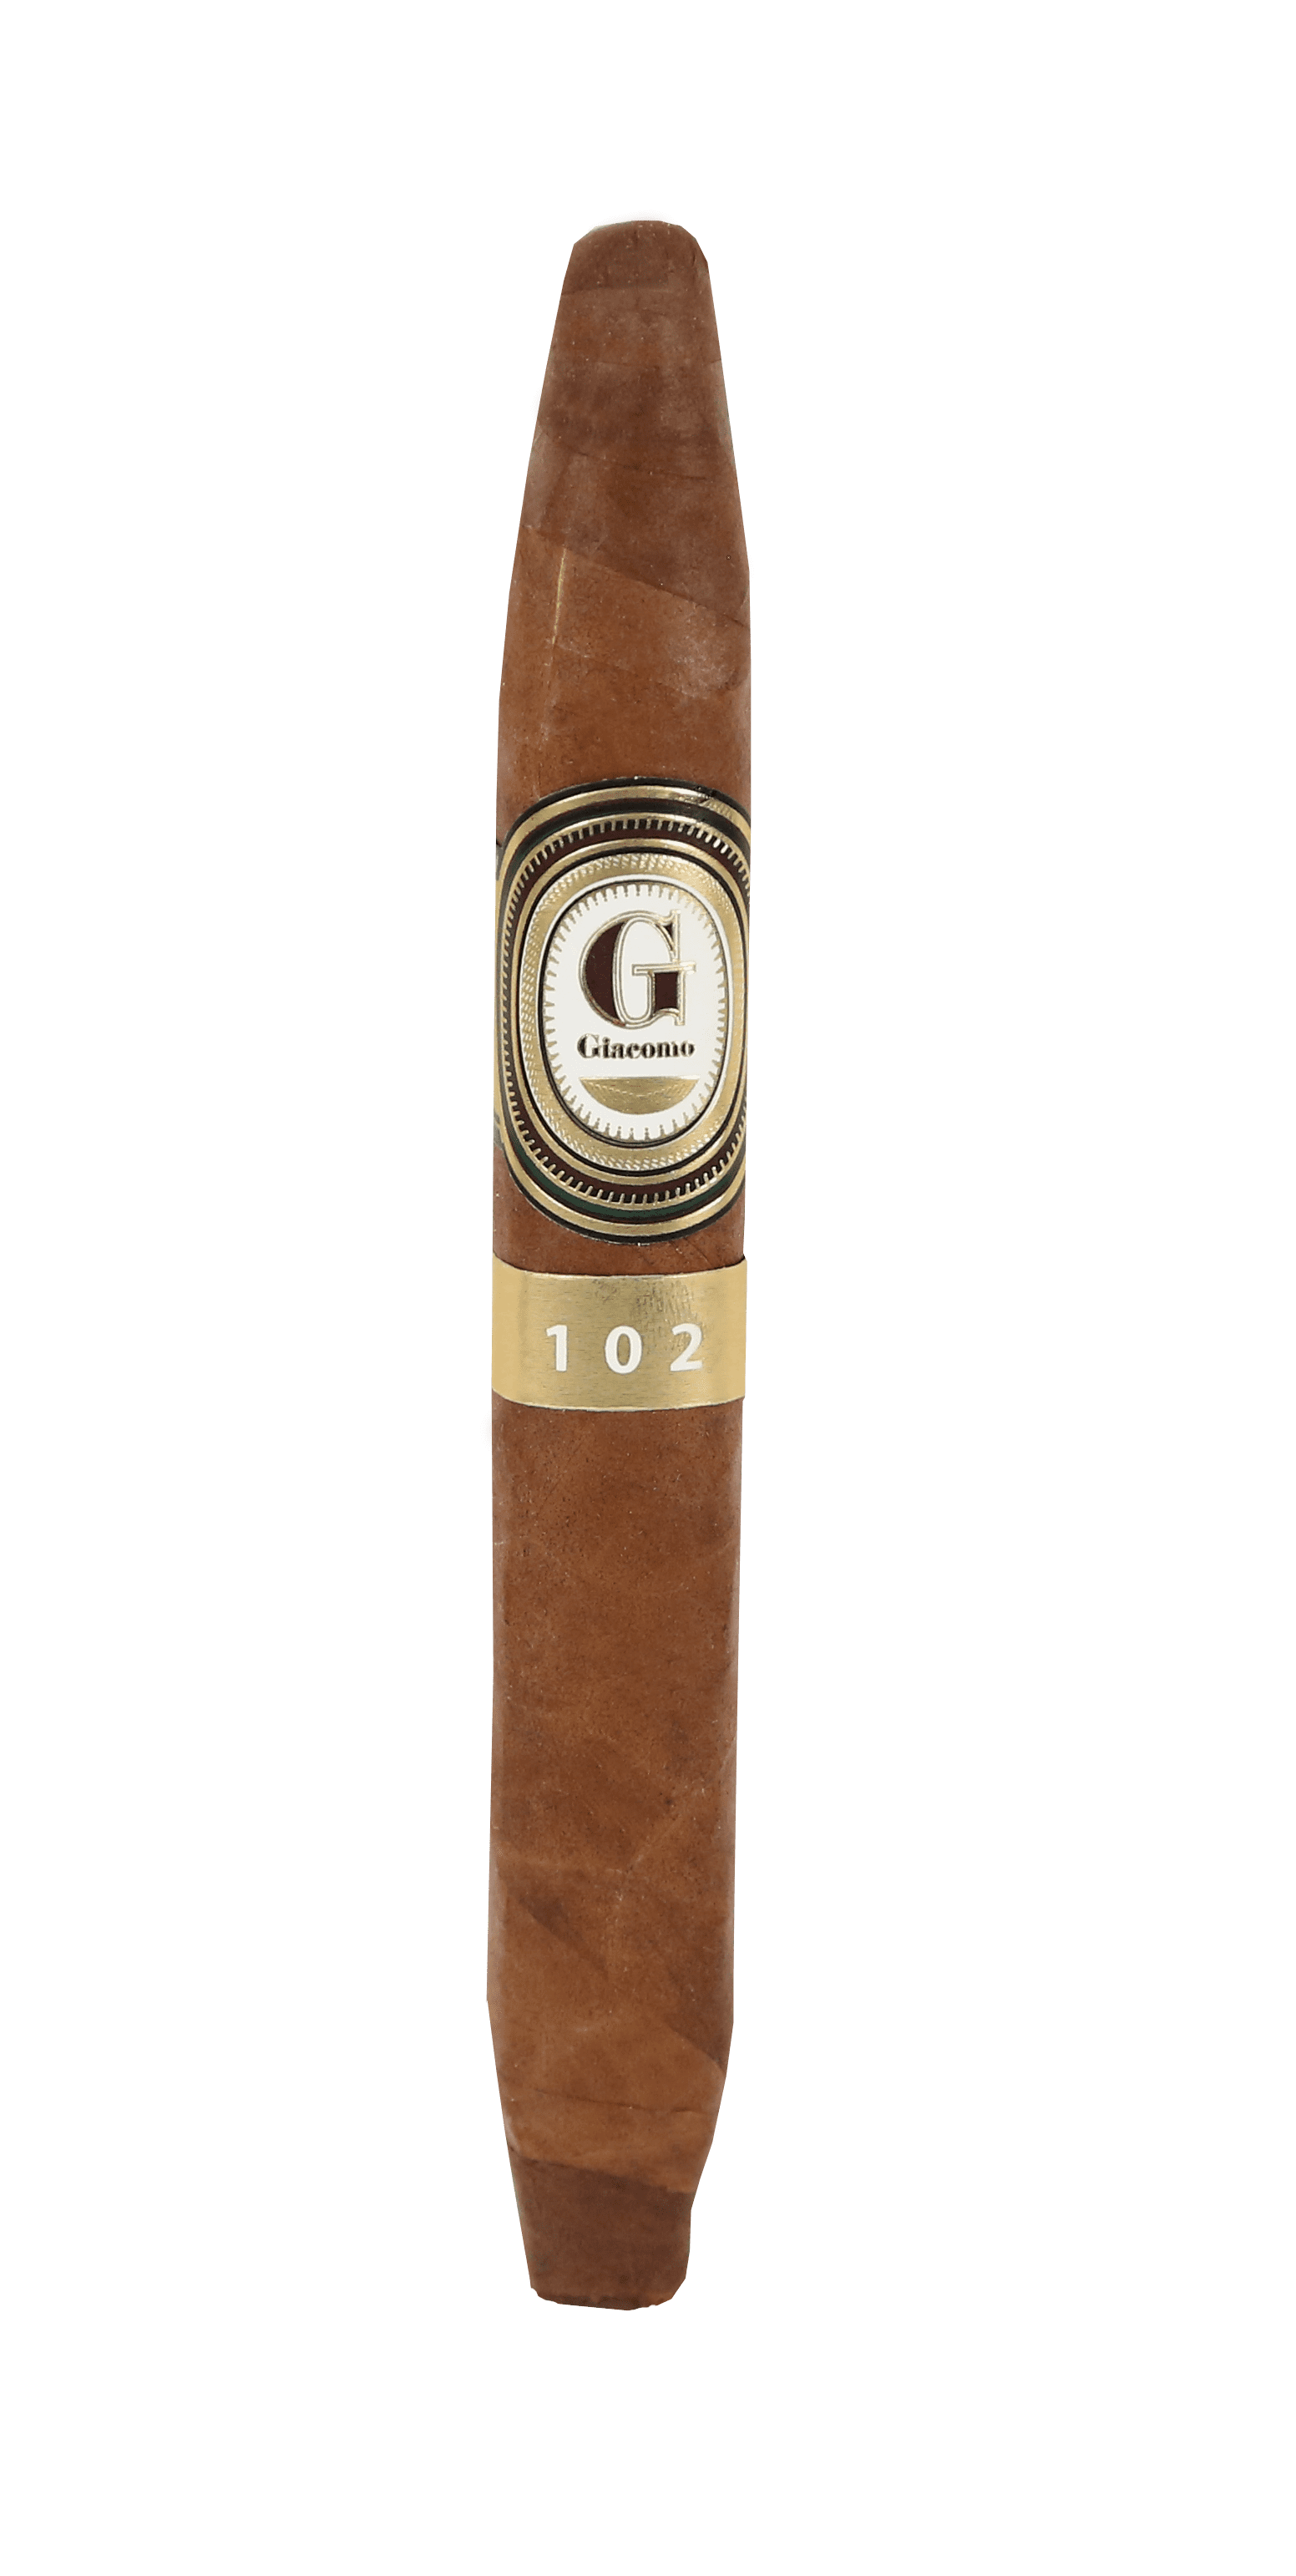 Single Giacomo Perfecto Cuadrado 102 cigar with gold band